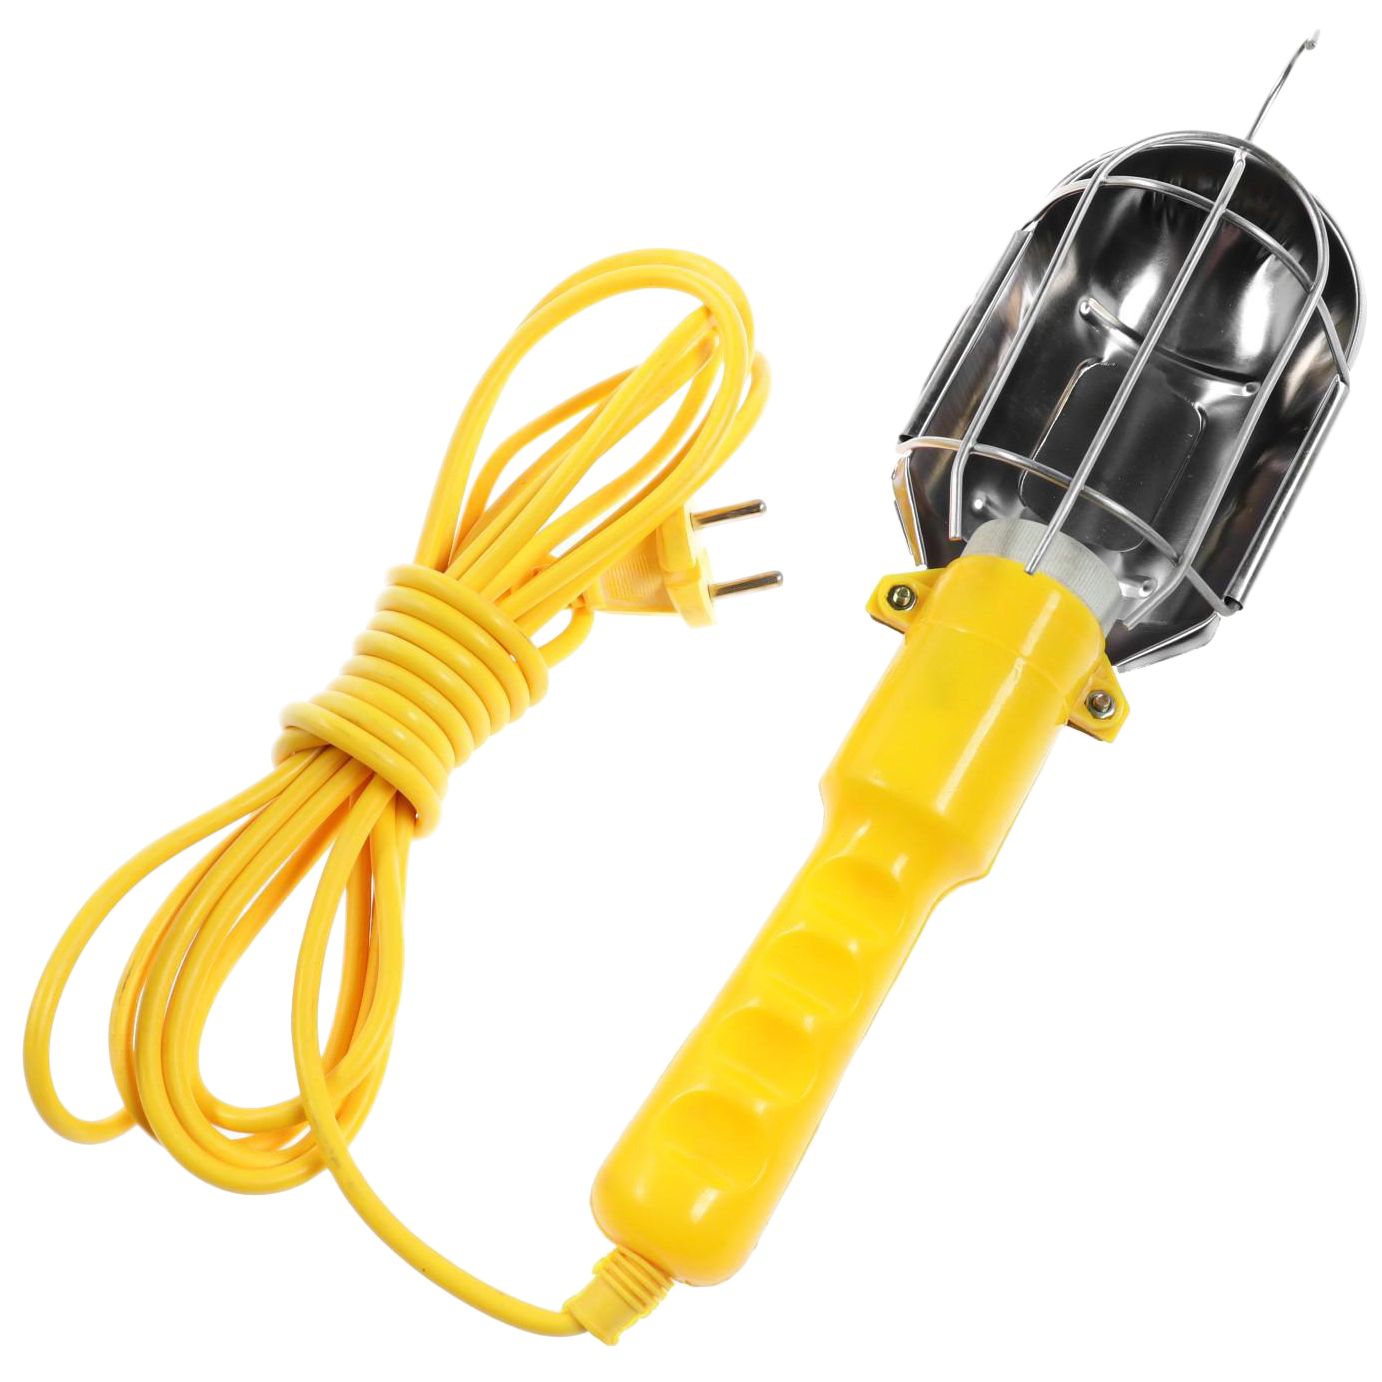 Светильник переносной Luazon Lighting с выключателем под лампу E27, 5 метров, желтый